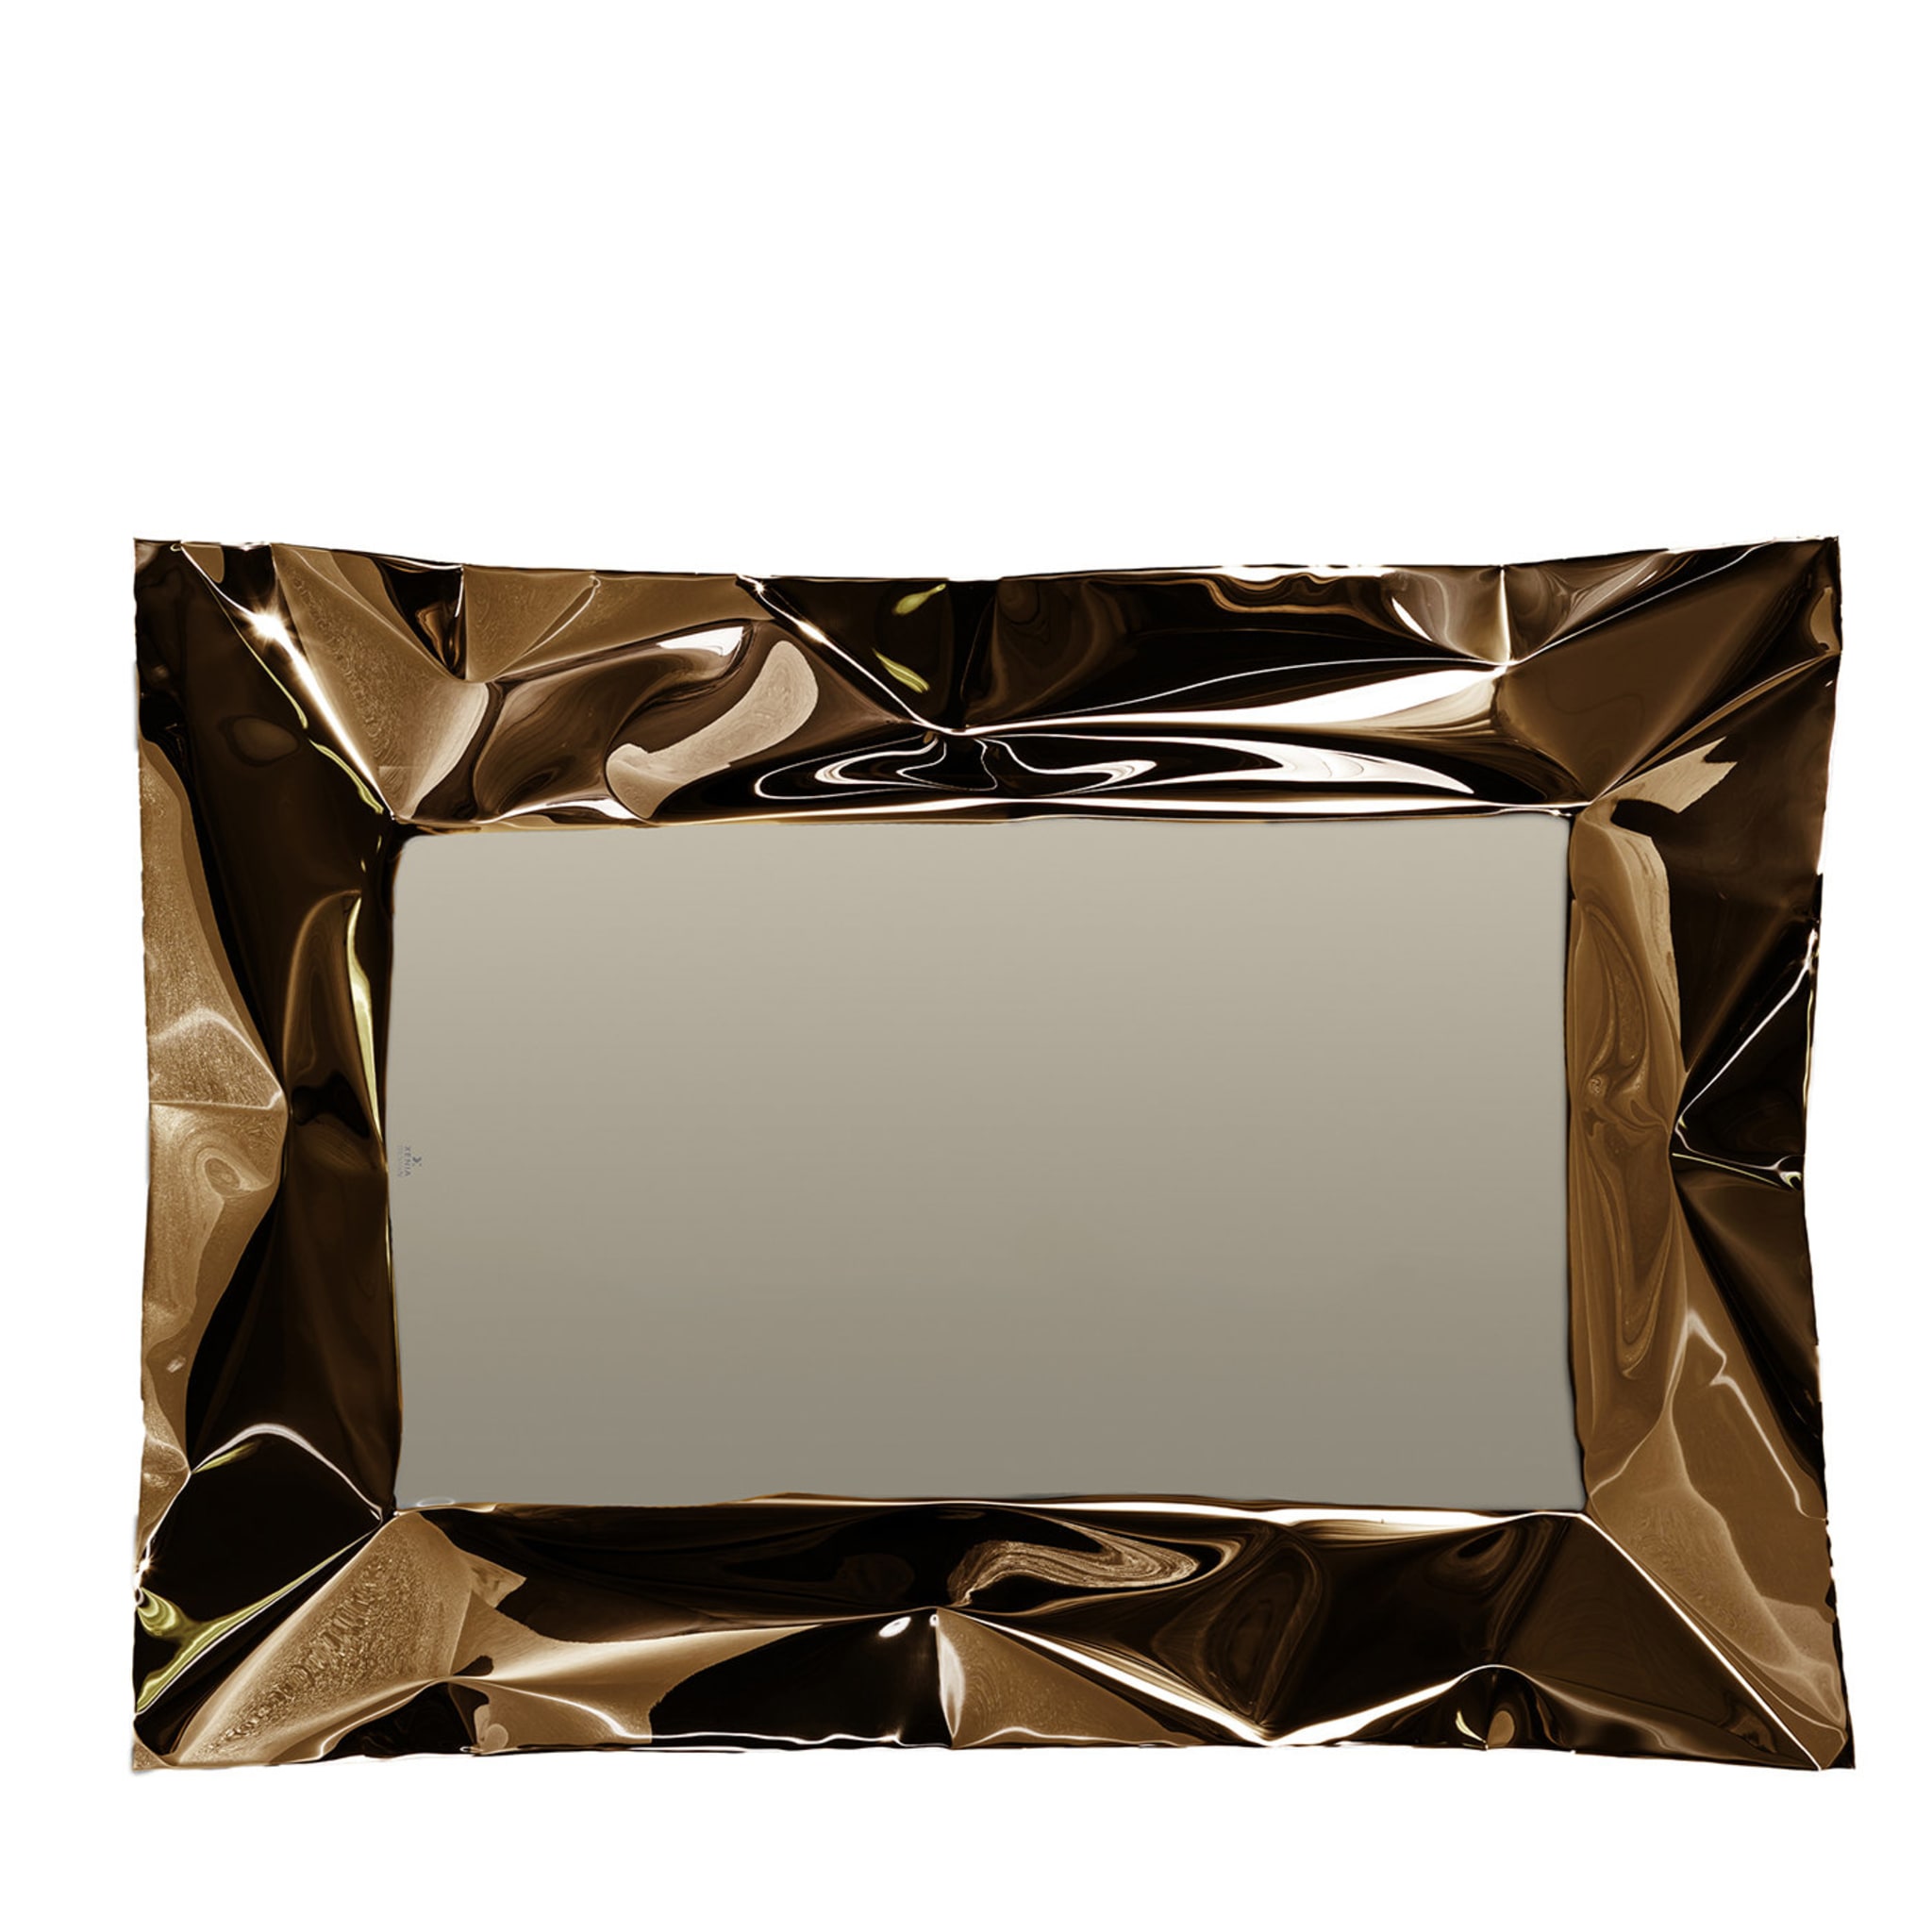 Lux bronze spiegel TV von Marco Mazzei - Hauptansicht